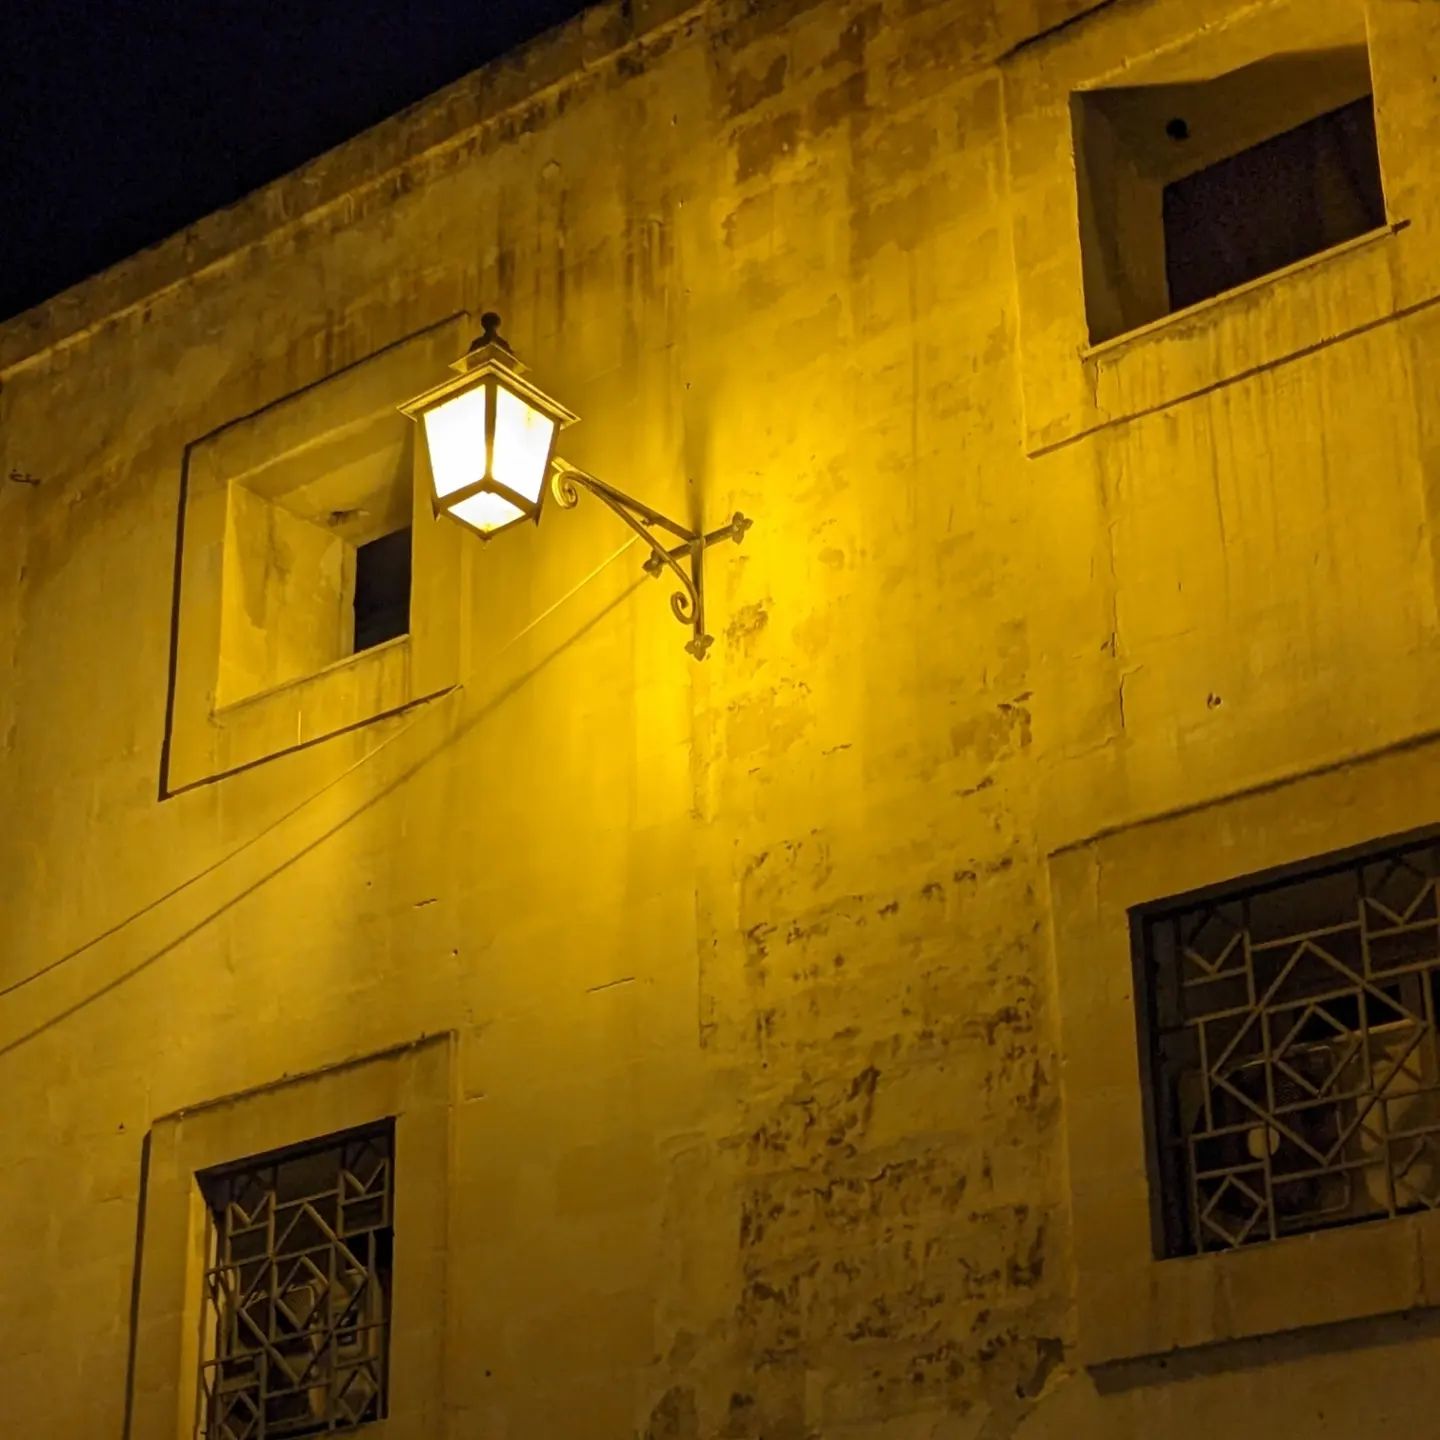 Malta bei Nacht. #Malta #Valletta #Reisen #Travel #Unterwegs #Nacht